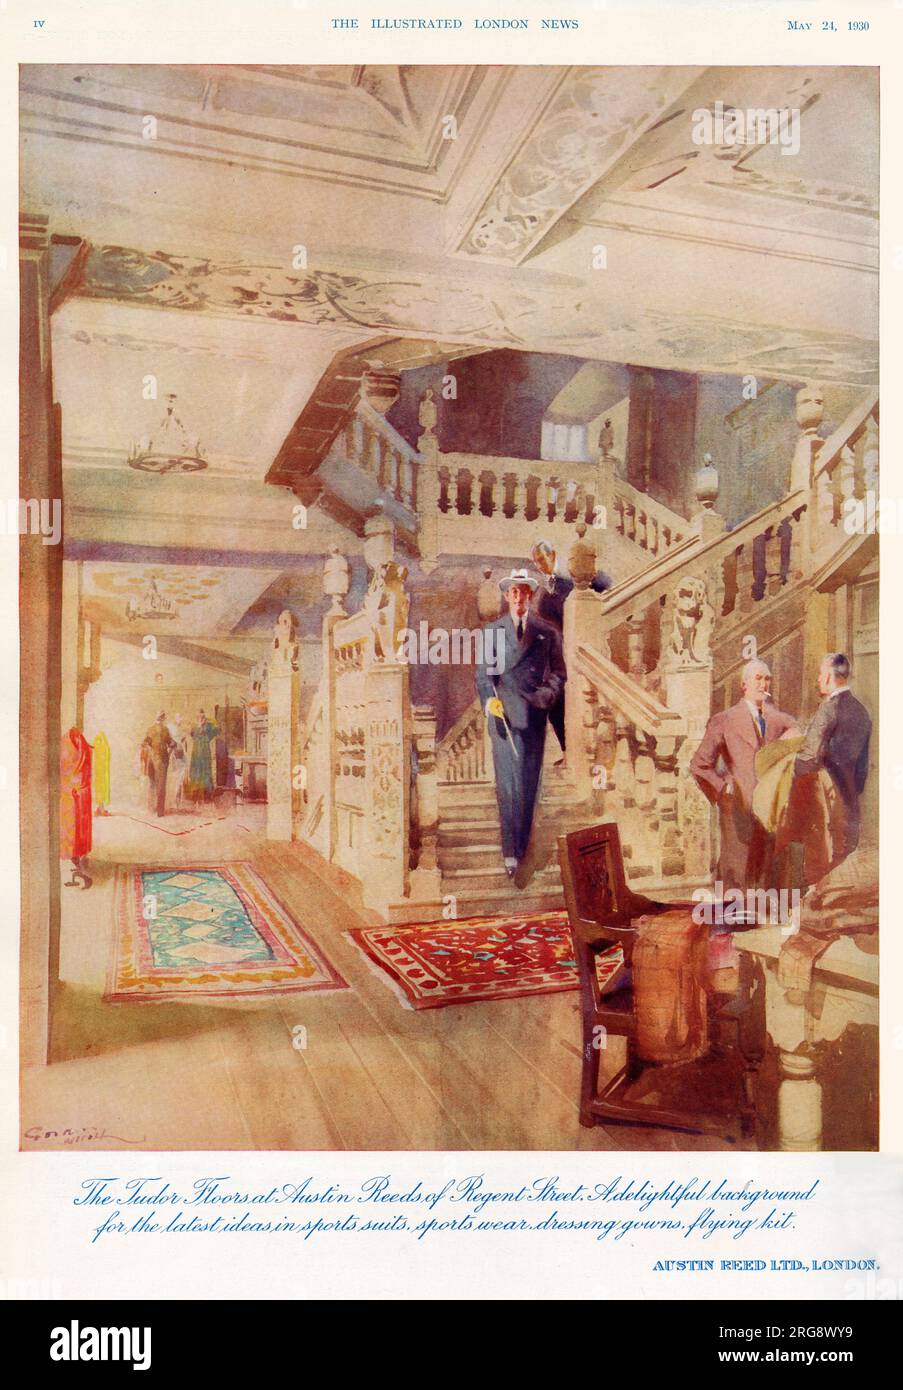 L'élégant escalier d'AUSTIN REEd'S, pourvoyeurs pour hommes, situé dans Regent Street, Londres Banque D'Images